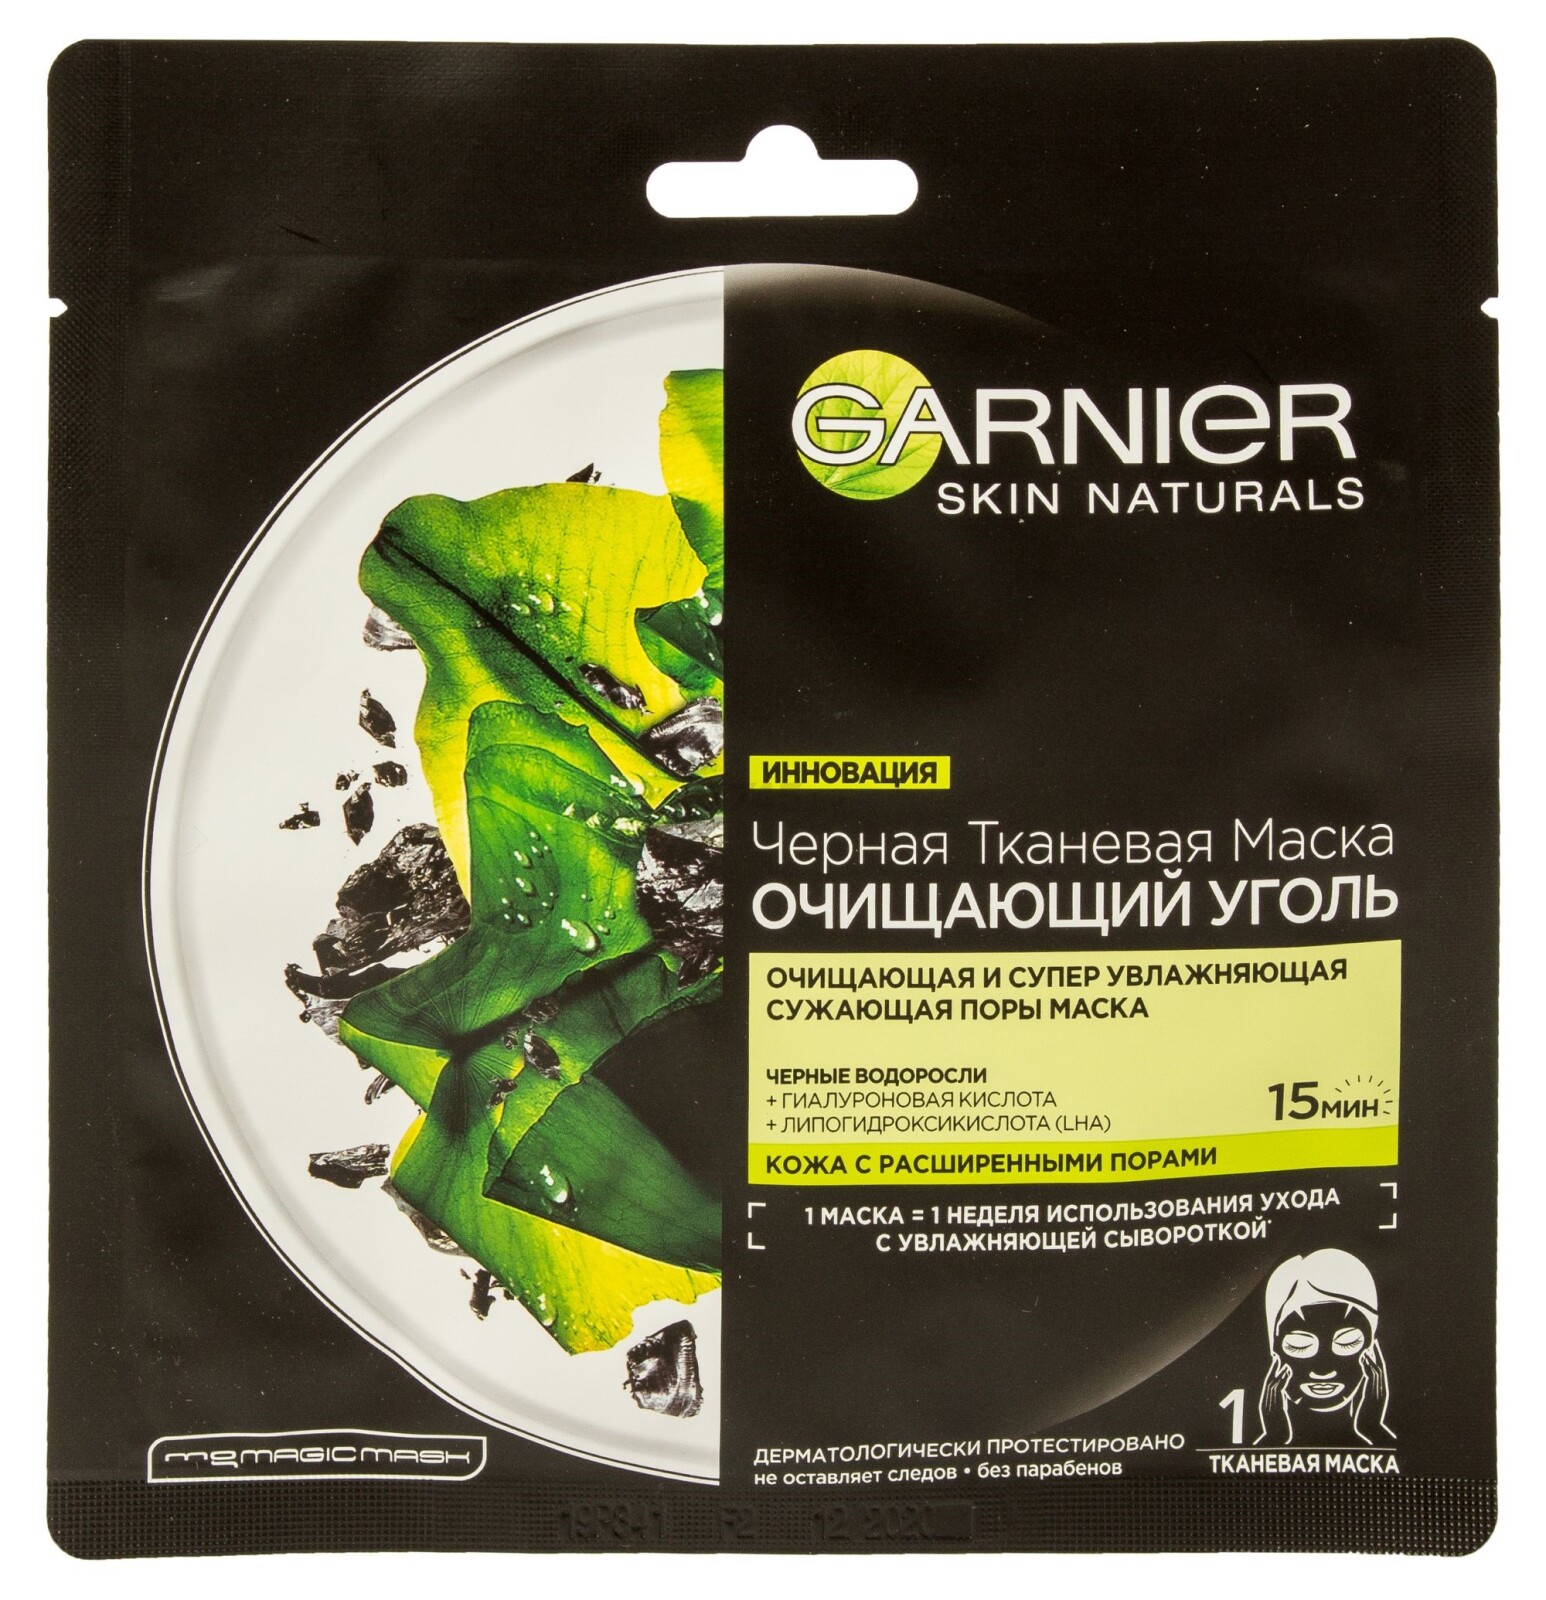 Маска GARNIER Skin Naturals Очищающий уголь Черные водоросли 28 г (0360350296)